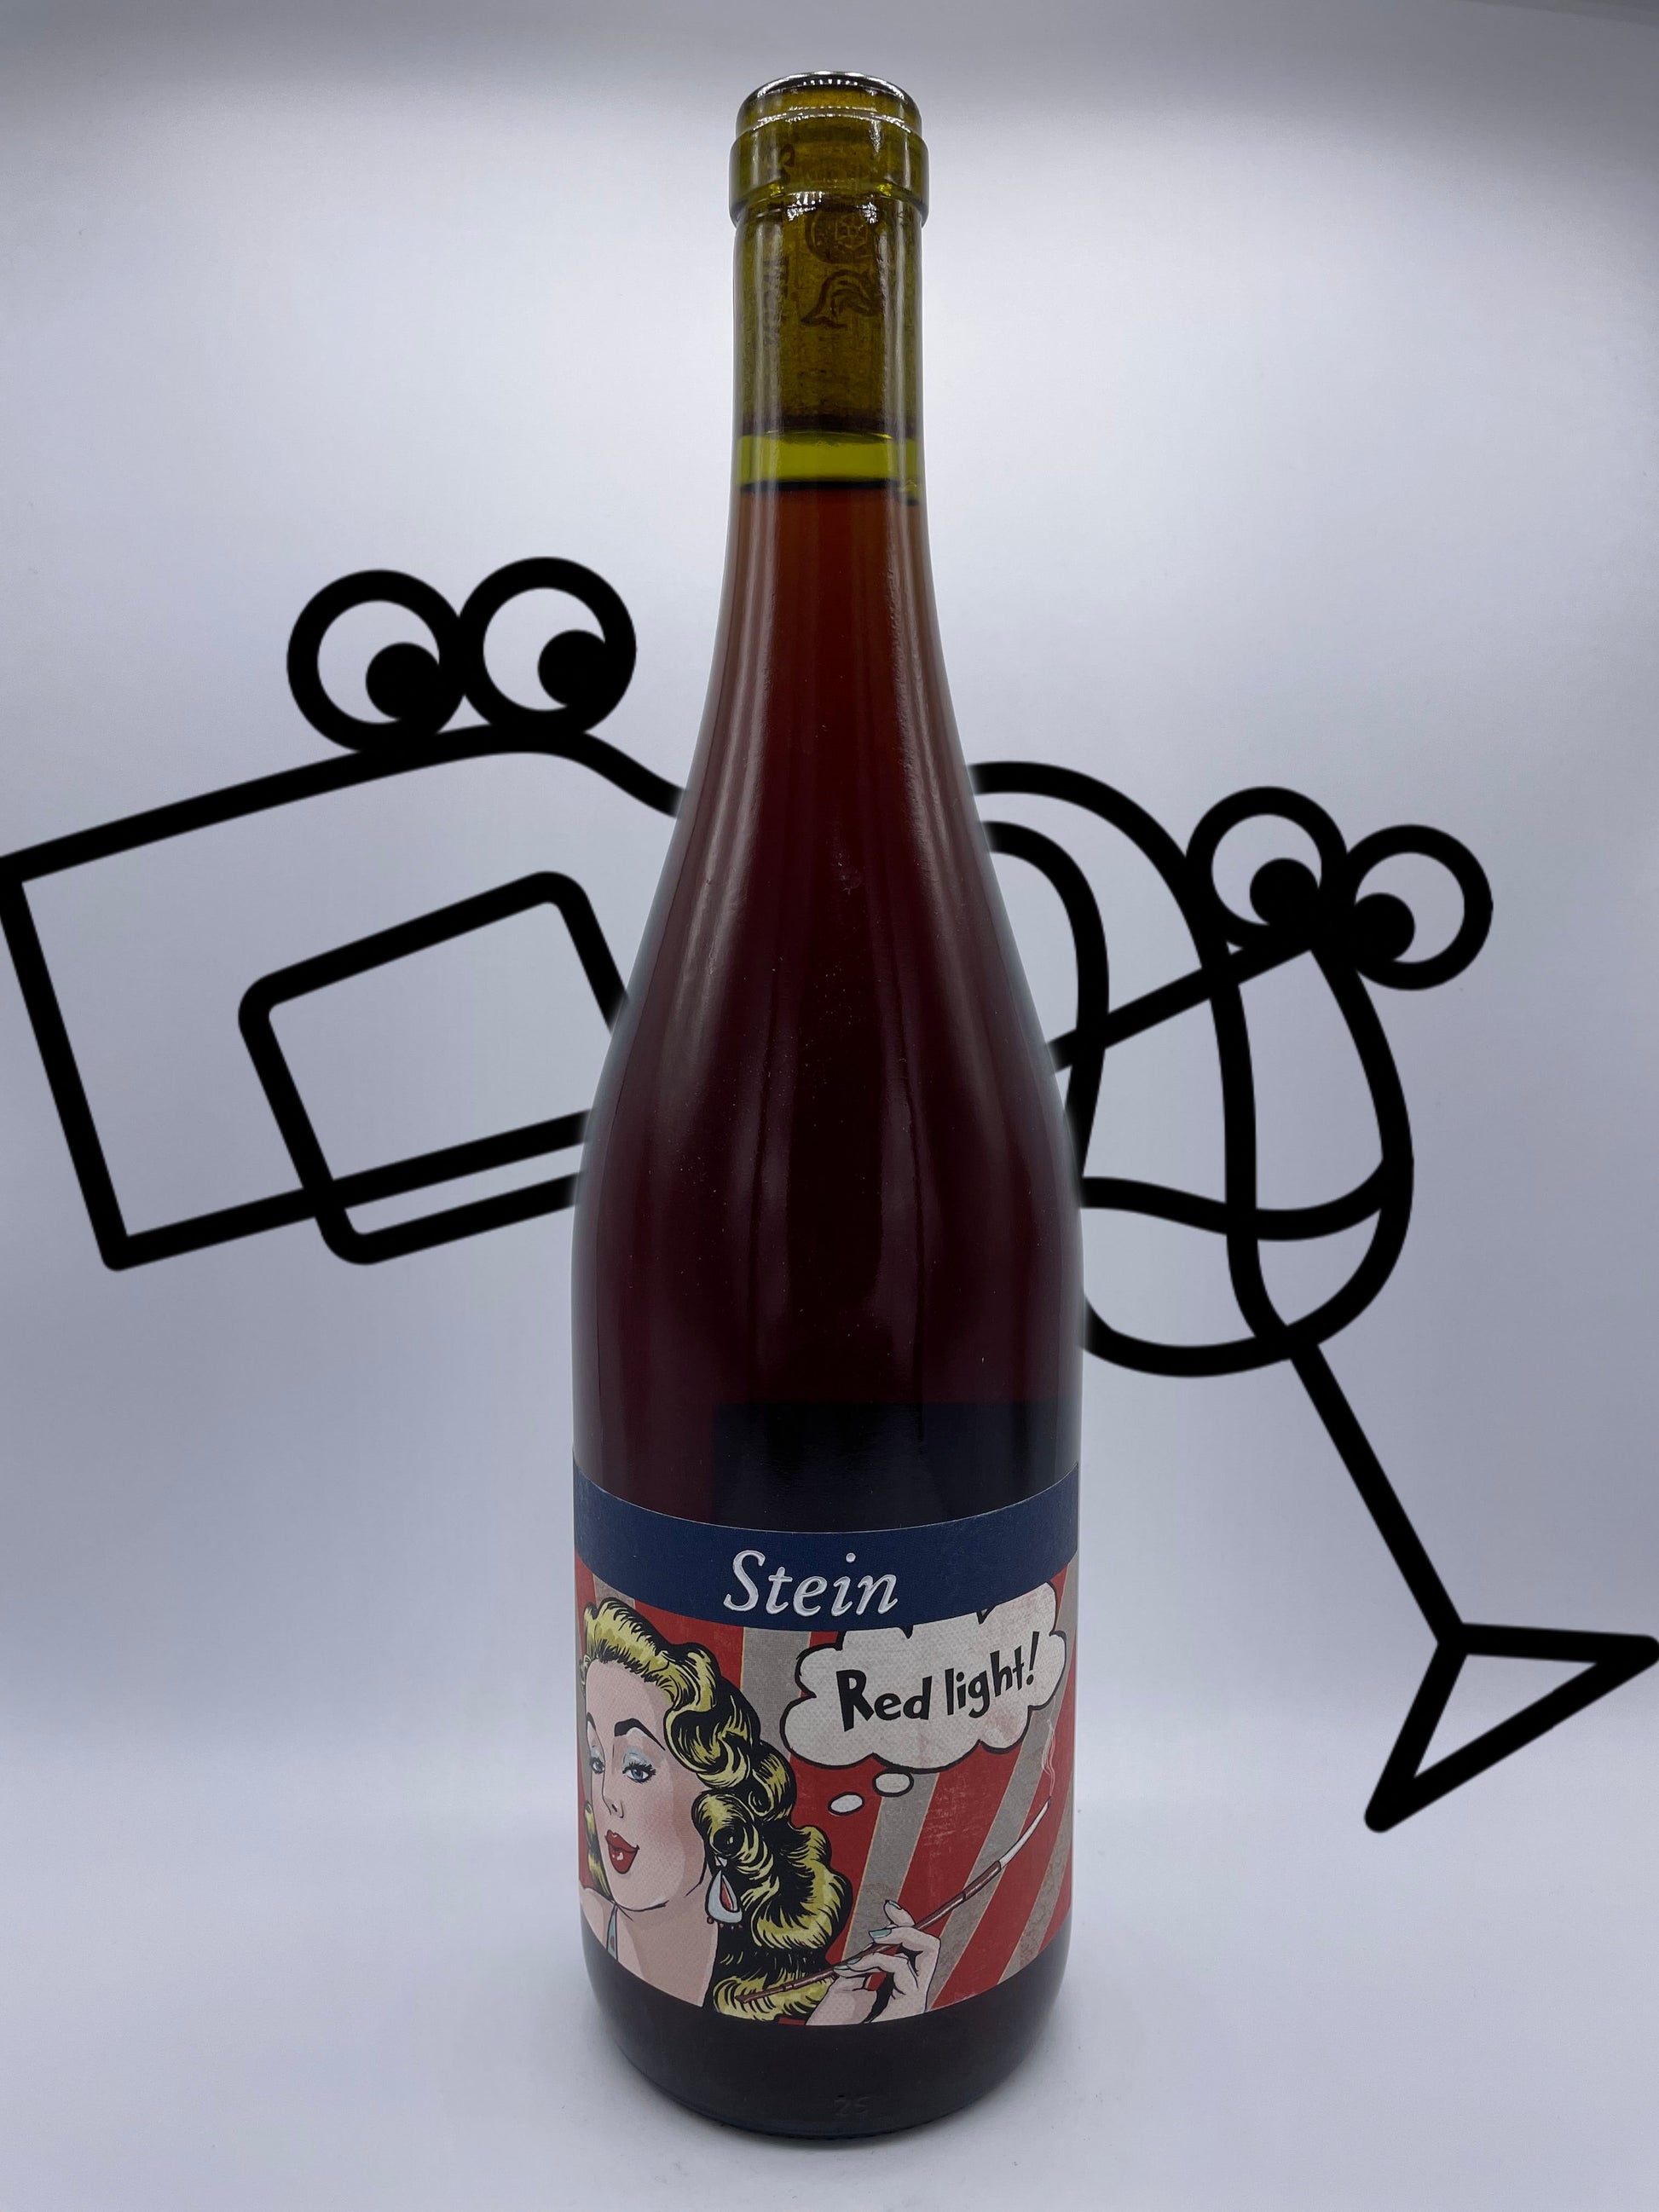 Stein Red Light Pinot Noir Williston Park Wines